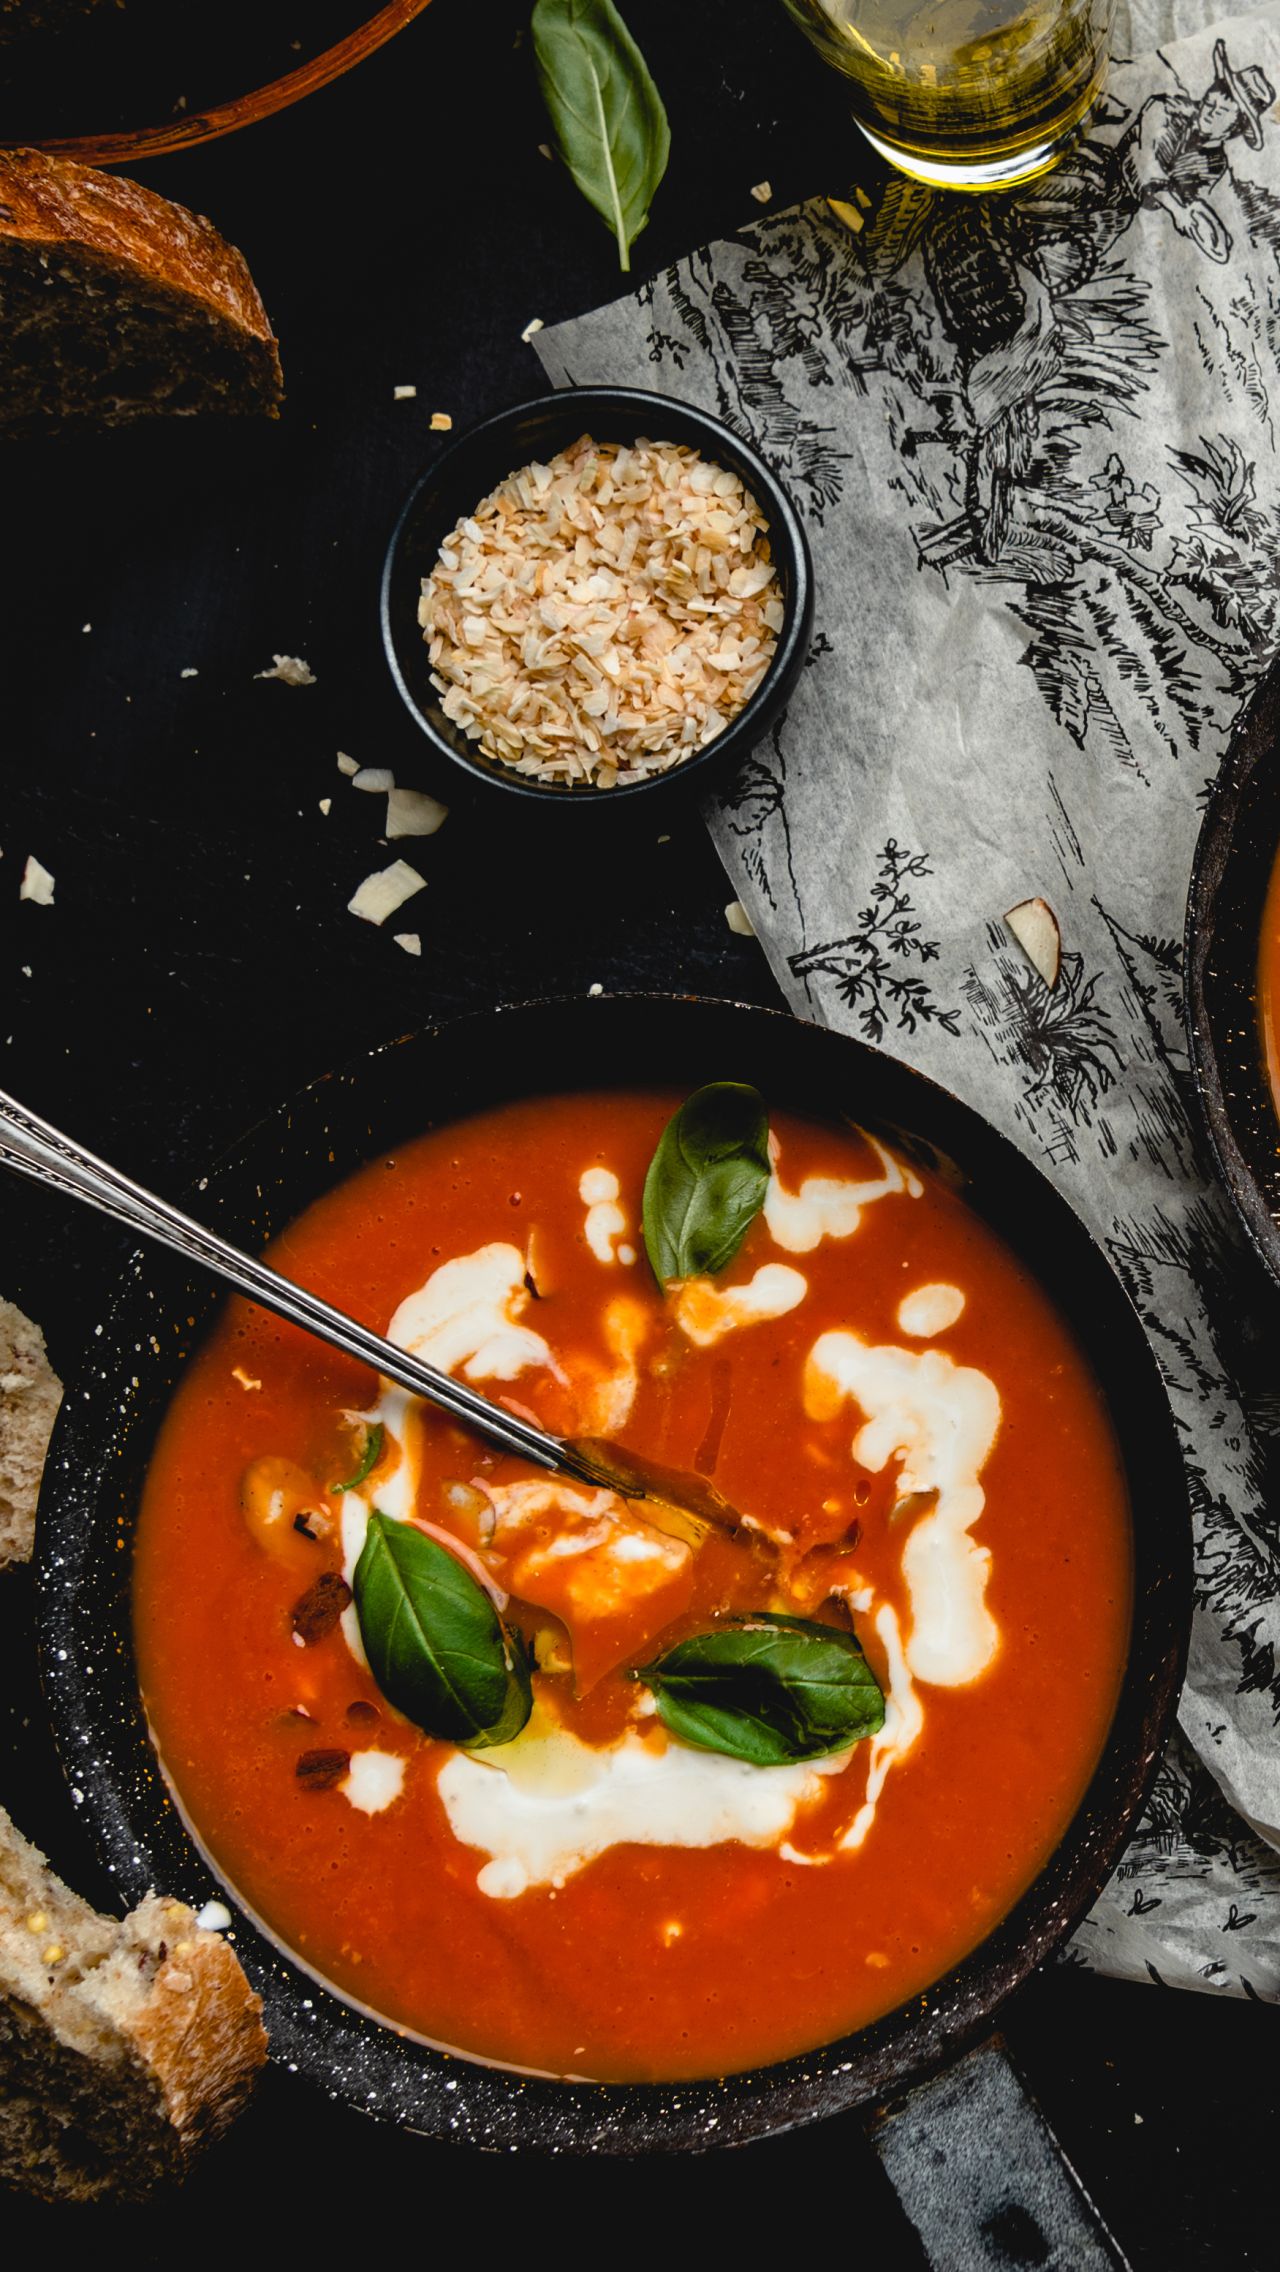 Рецепт томатного супа-пюре, который сможет приготовить каждый